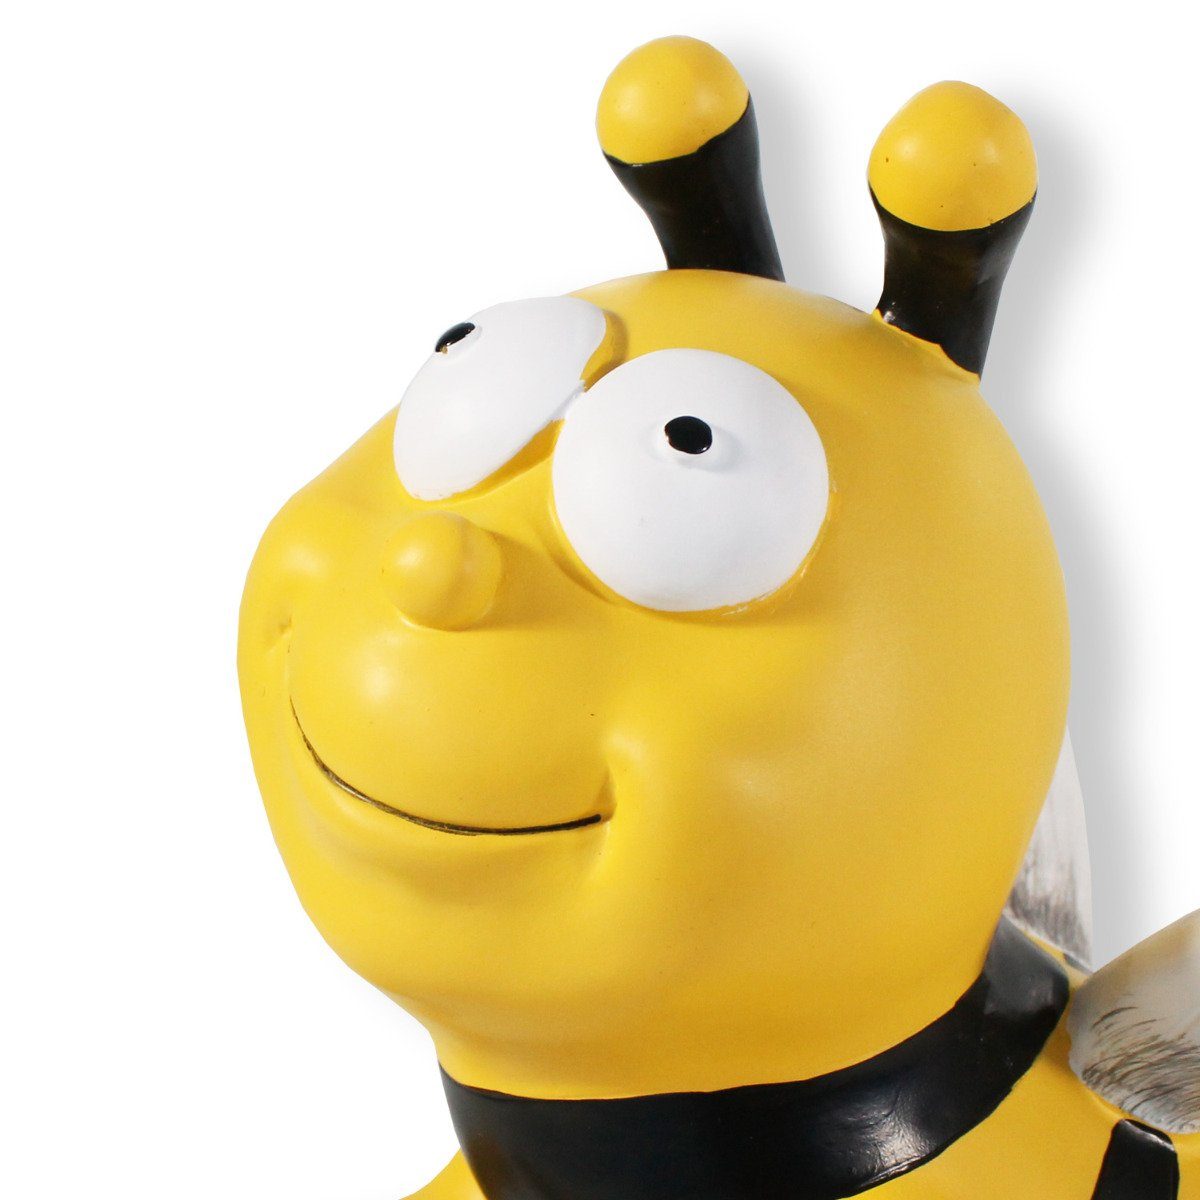 handbemalt, Deko, auf fliegend Figur Bienen colourliving Tierfigur wetterfest, Stab ist möglich Montage schwebende Biene Gartenstecker